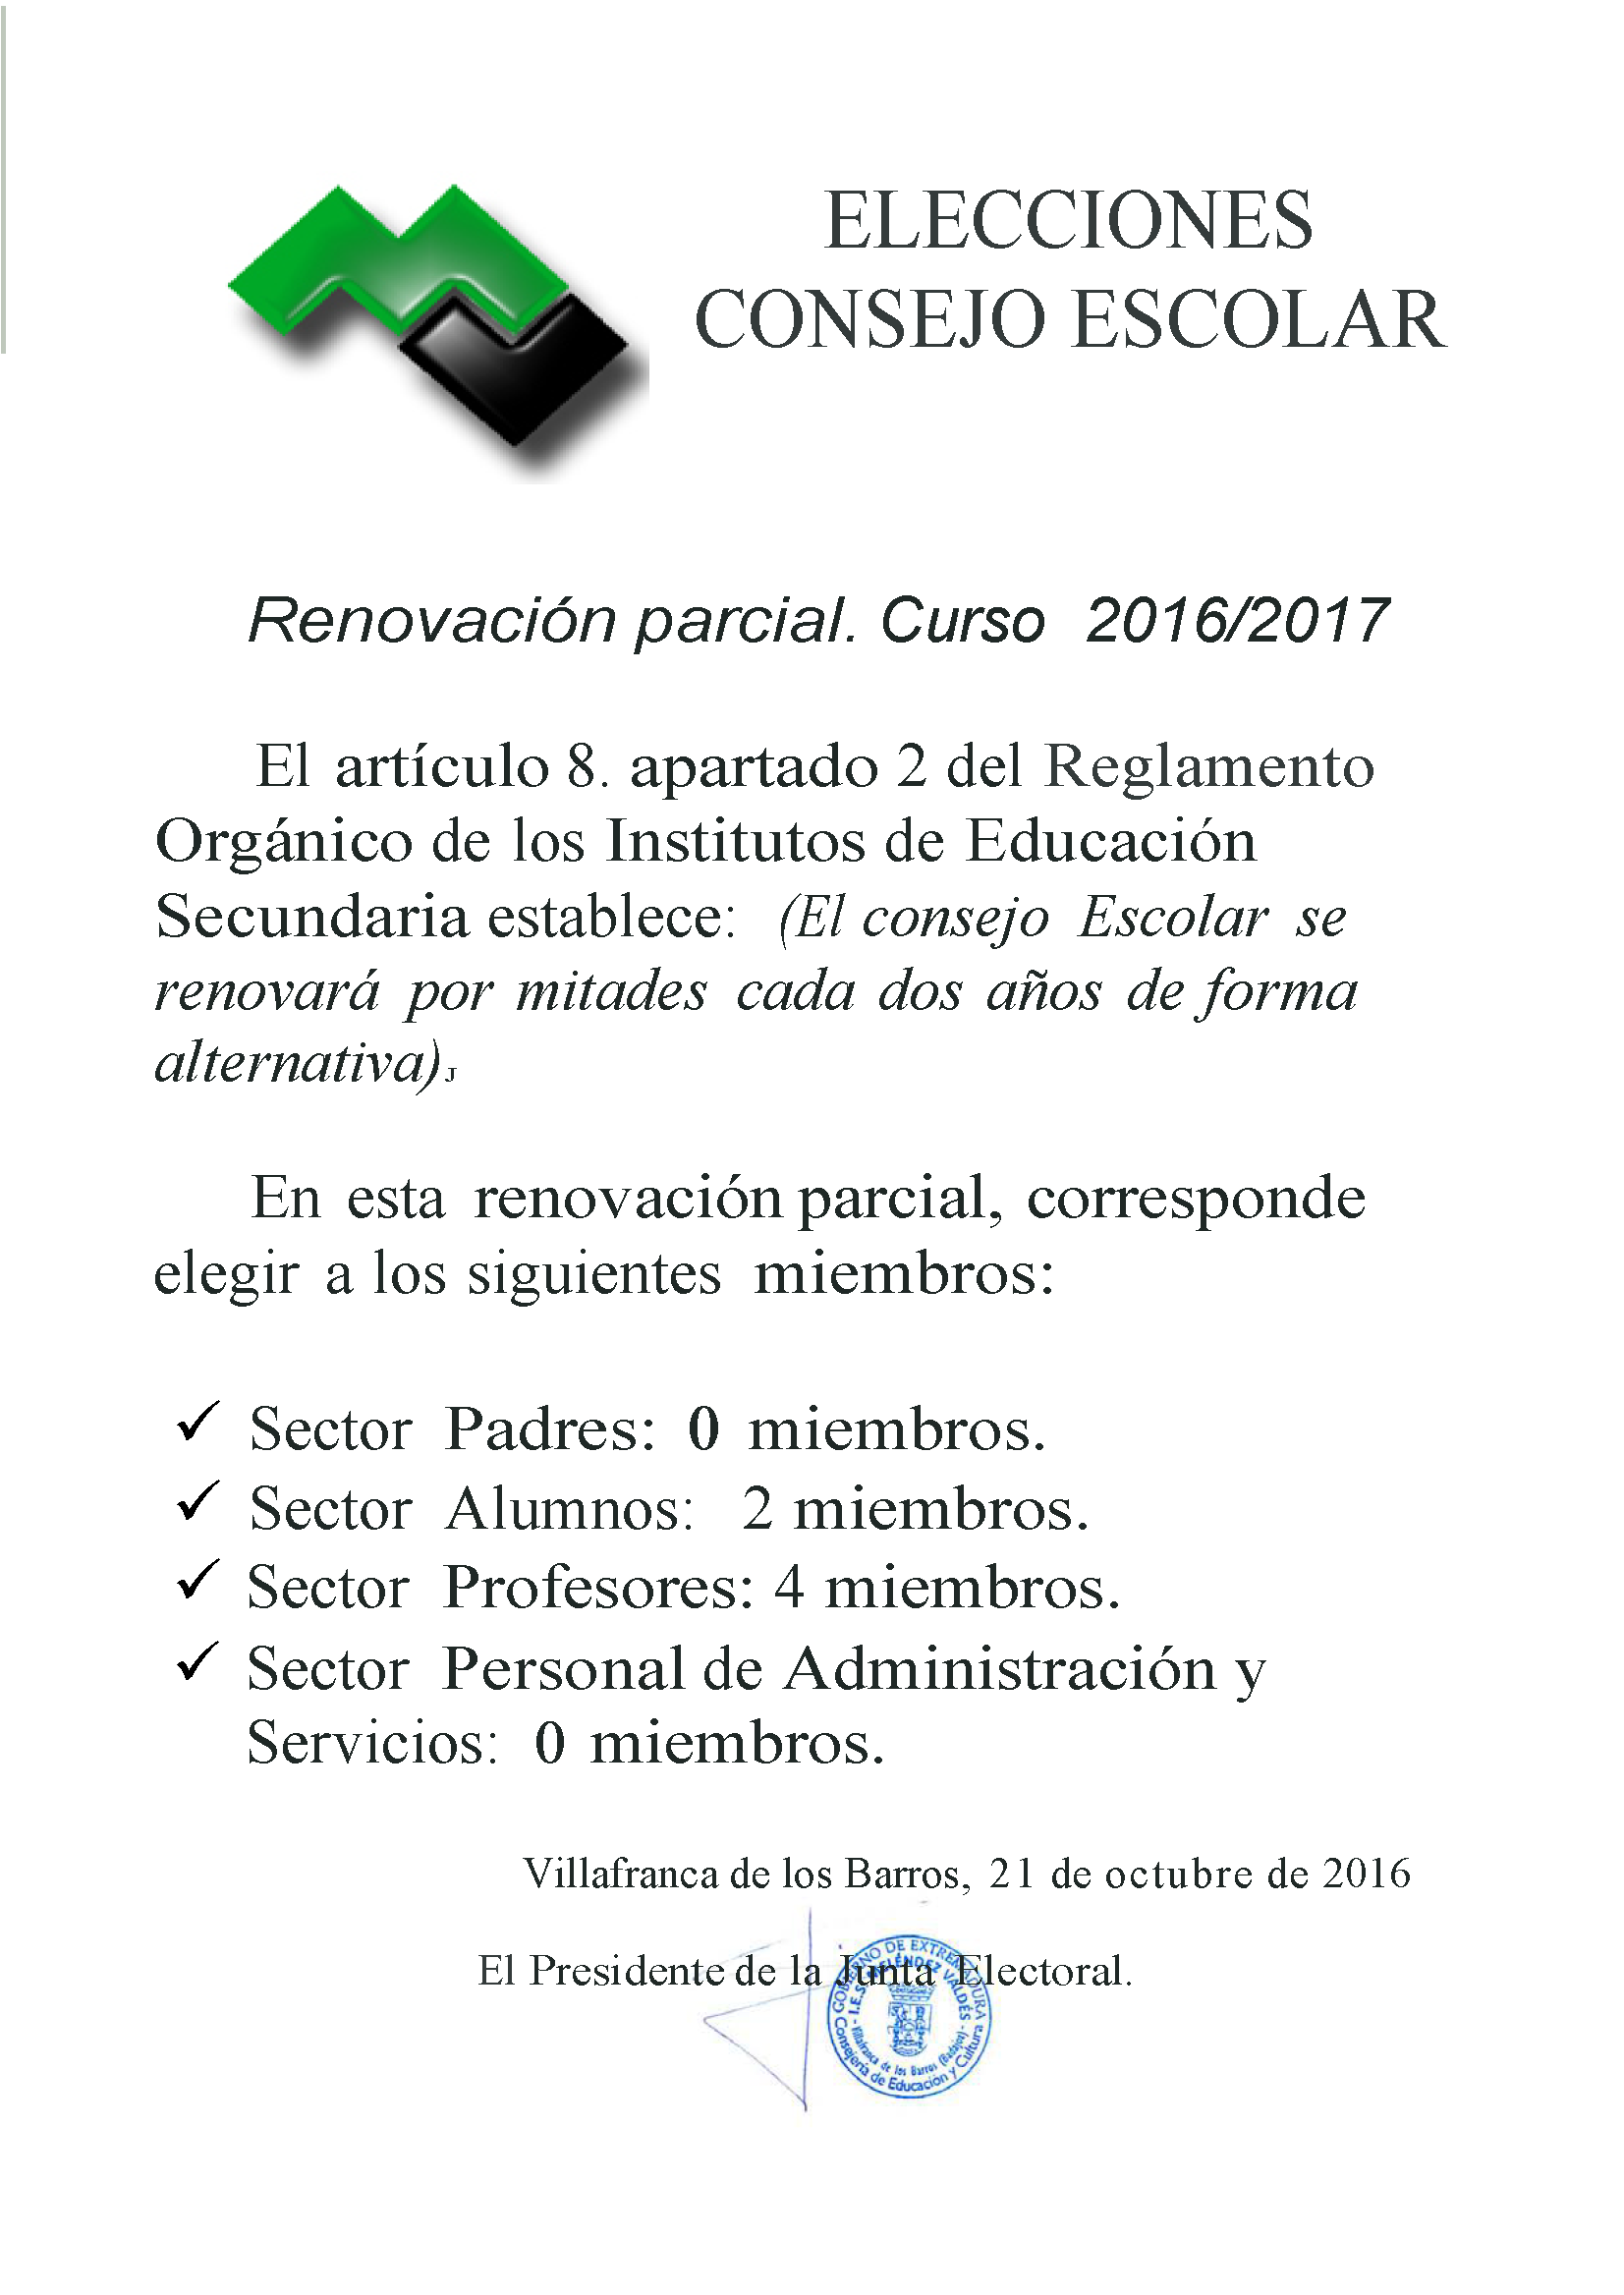 Calendario Elecciones Consejo Escolar Página 1